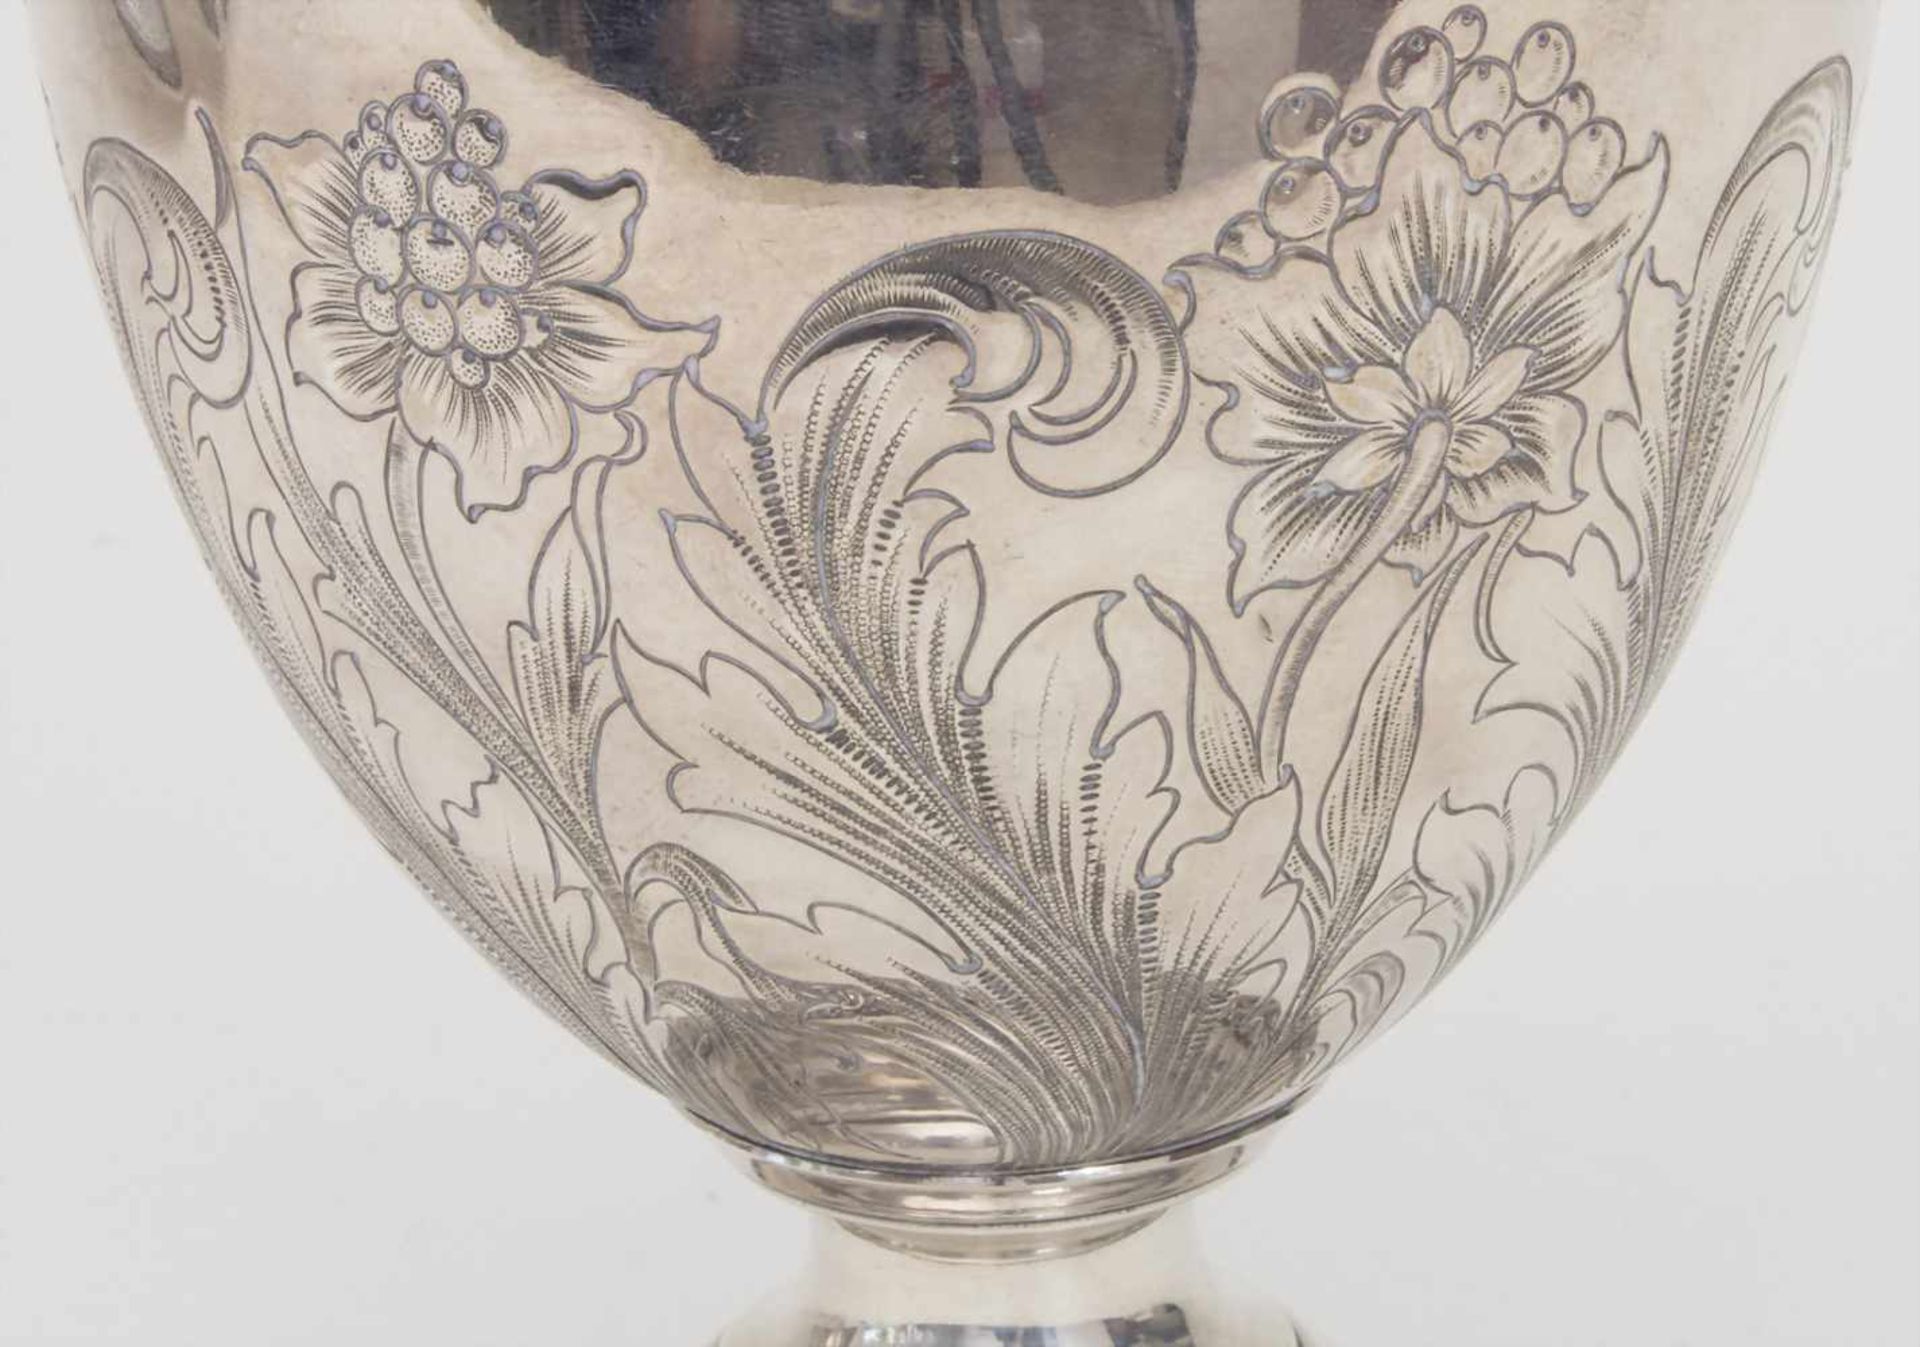 Große Waschschüssel mit Wasserkrug / A large silver wash bowl with ewer, L. Dupre, Paris, 1819- - Image 13 of 15